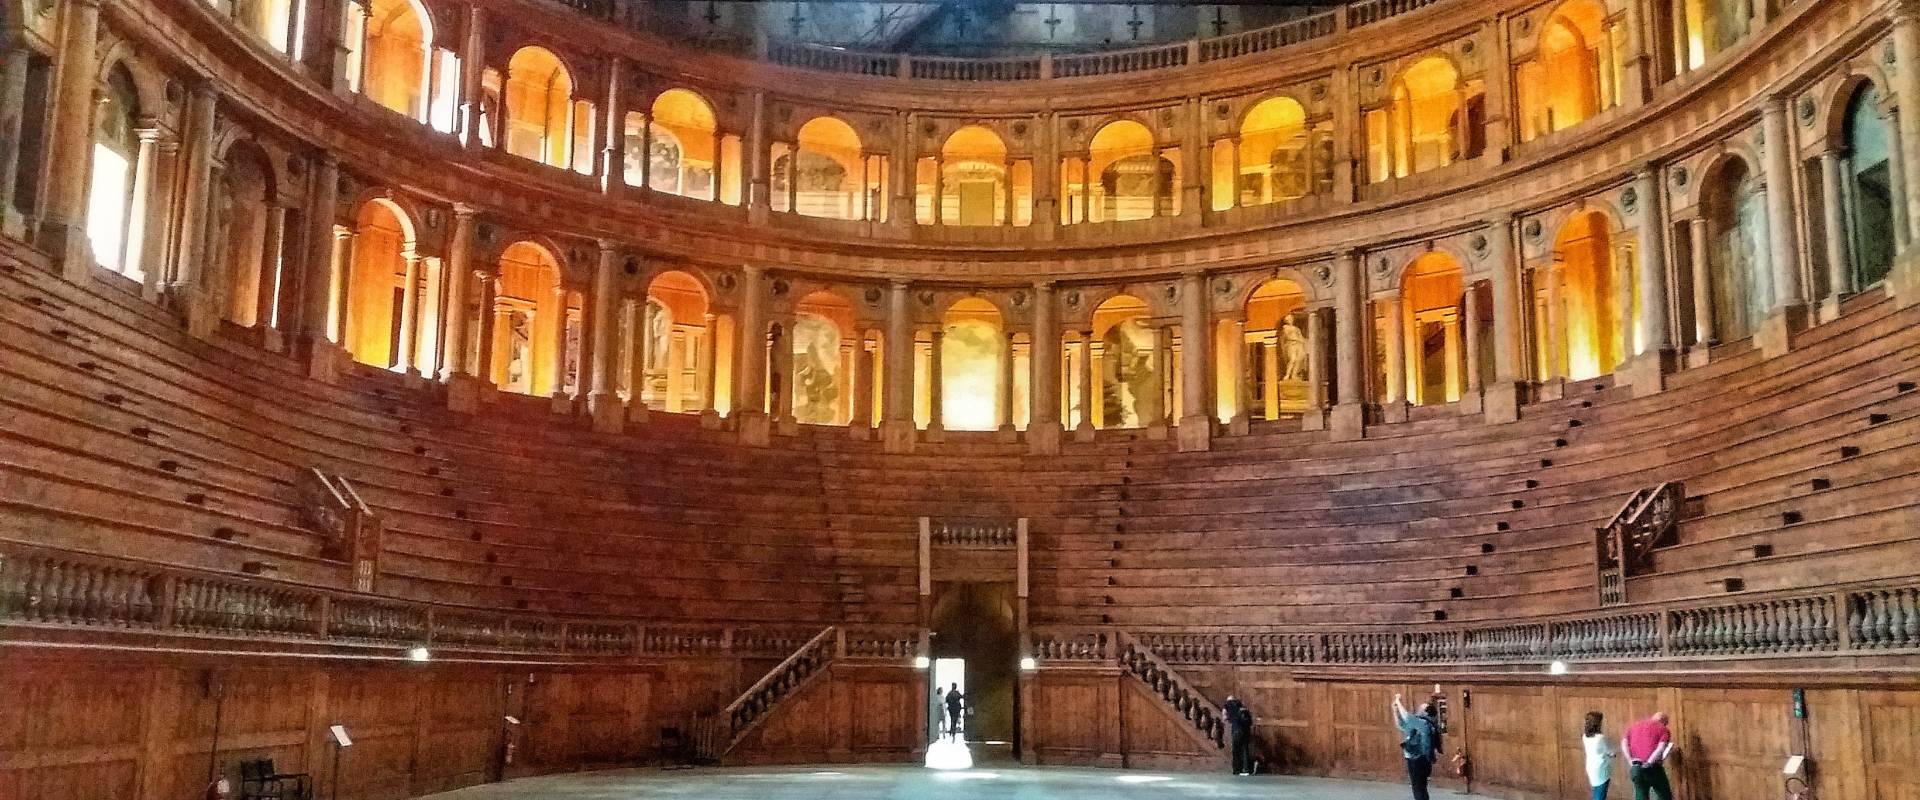 Il bellissimo Teatro Farnese foto di Magi2196